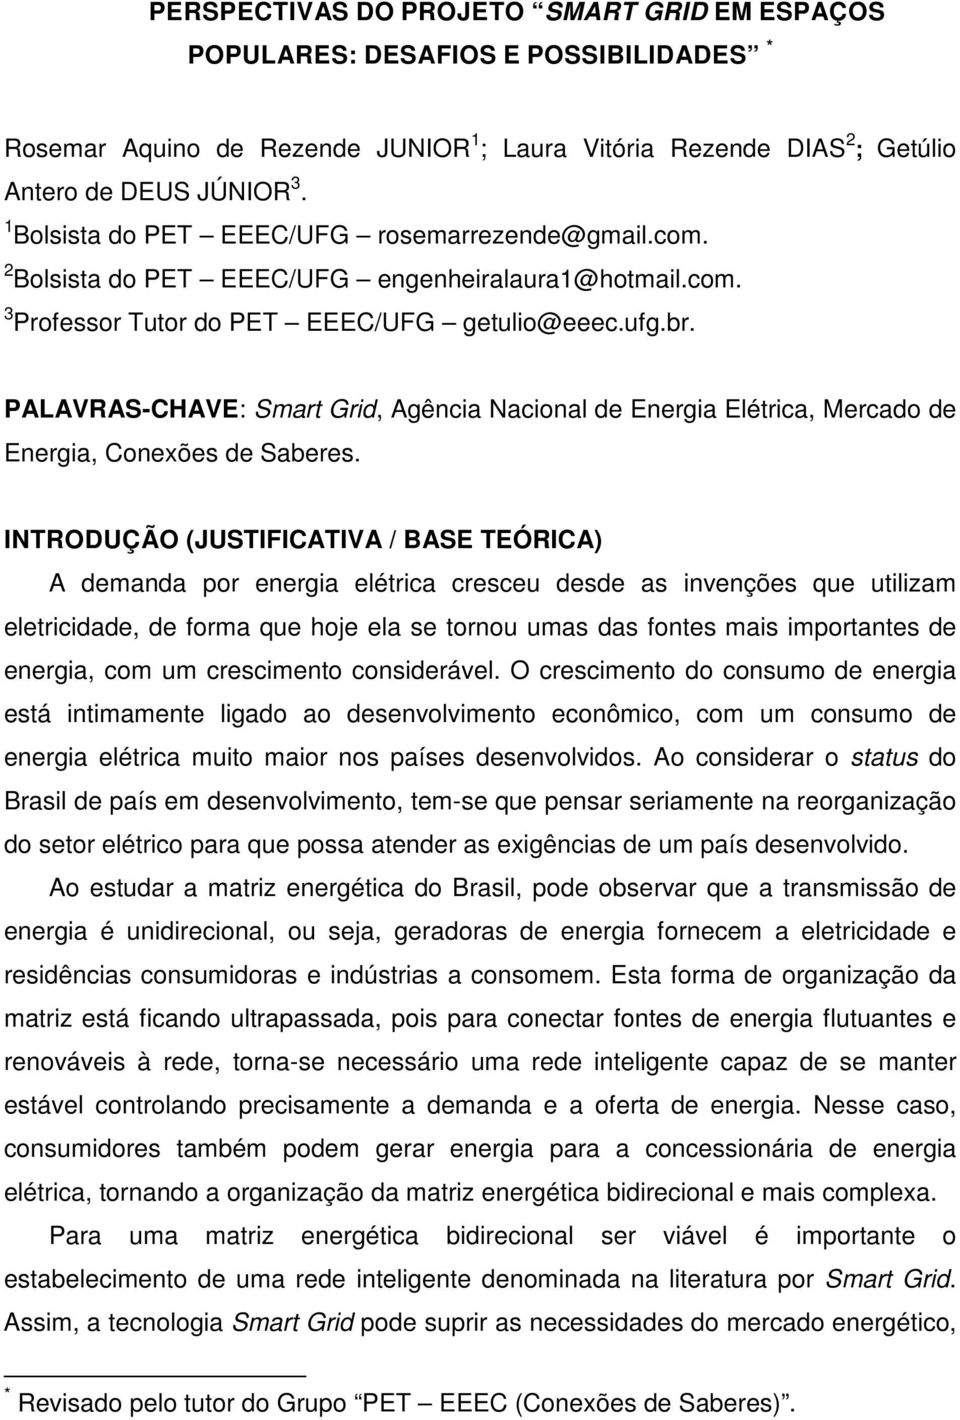 PALAVRAS-CHAVE: Smart Grid, Agência Nacional de Energia Elétrica, Mercado de Energia, Conexões de Saberes.